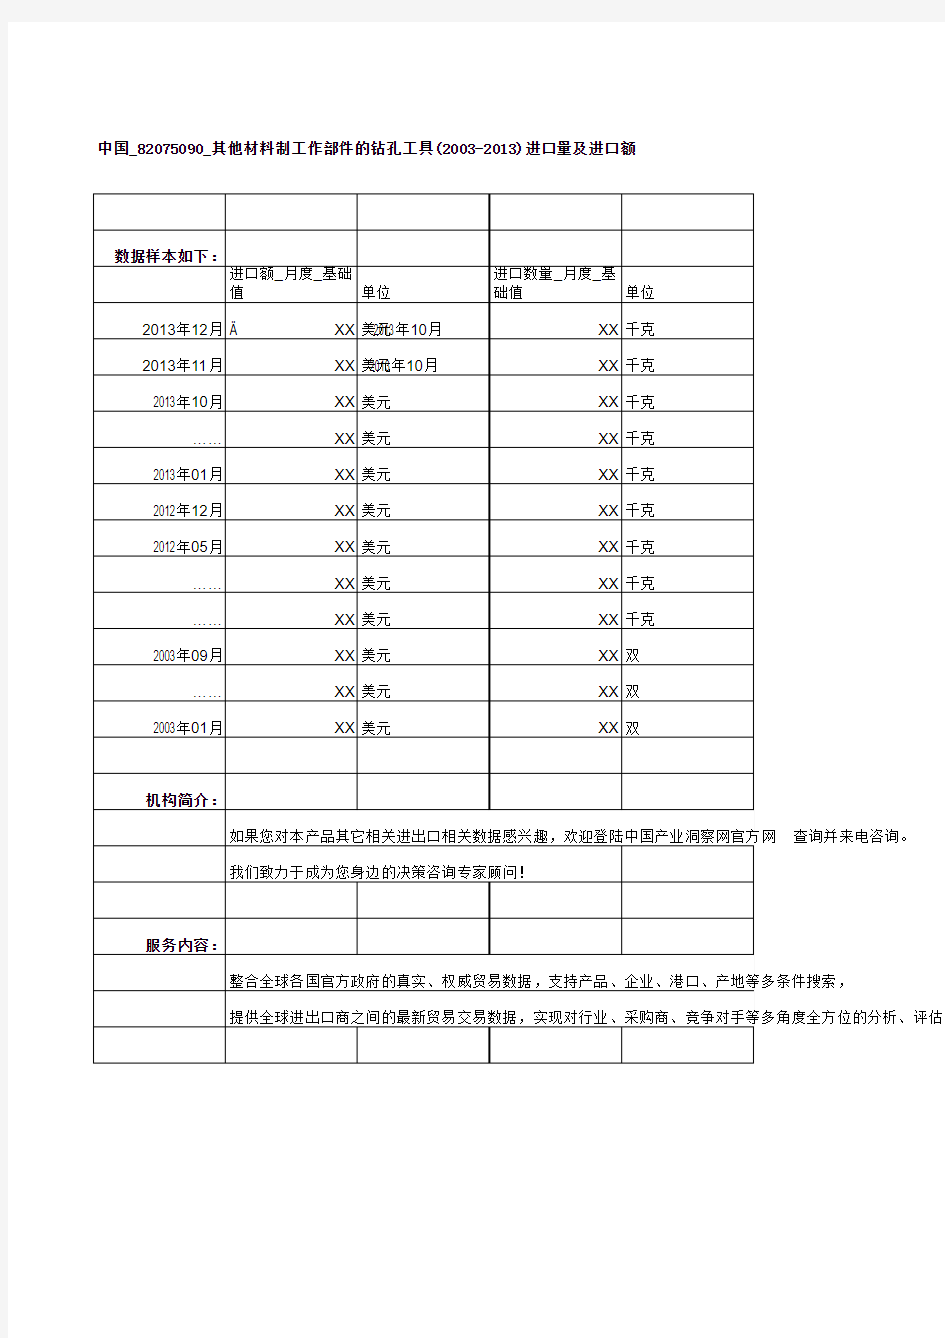 中国_82075090_其他材料制工作部件的钻孔工具(2003-2013)进口量及进口额